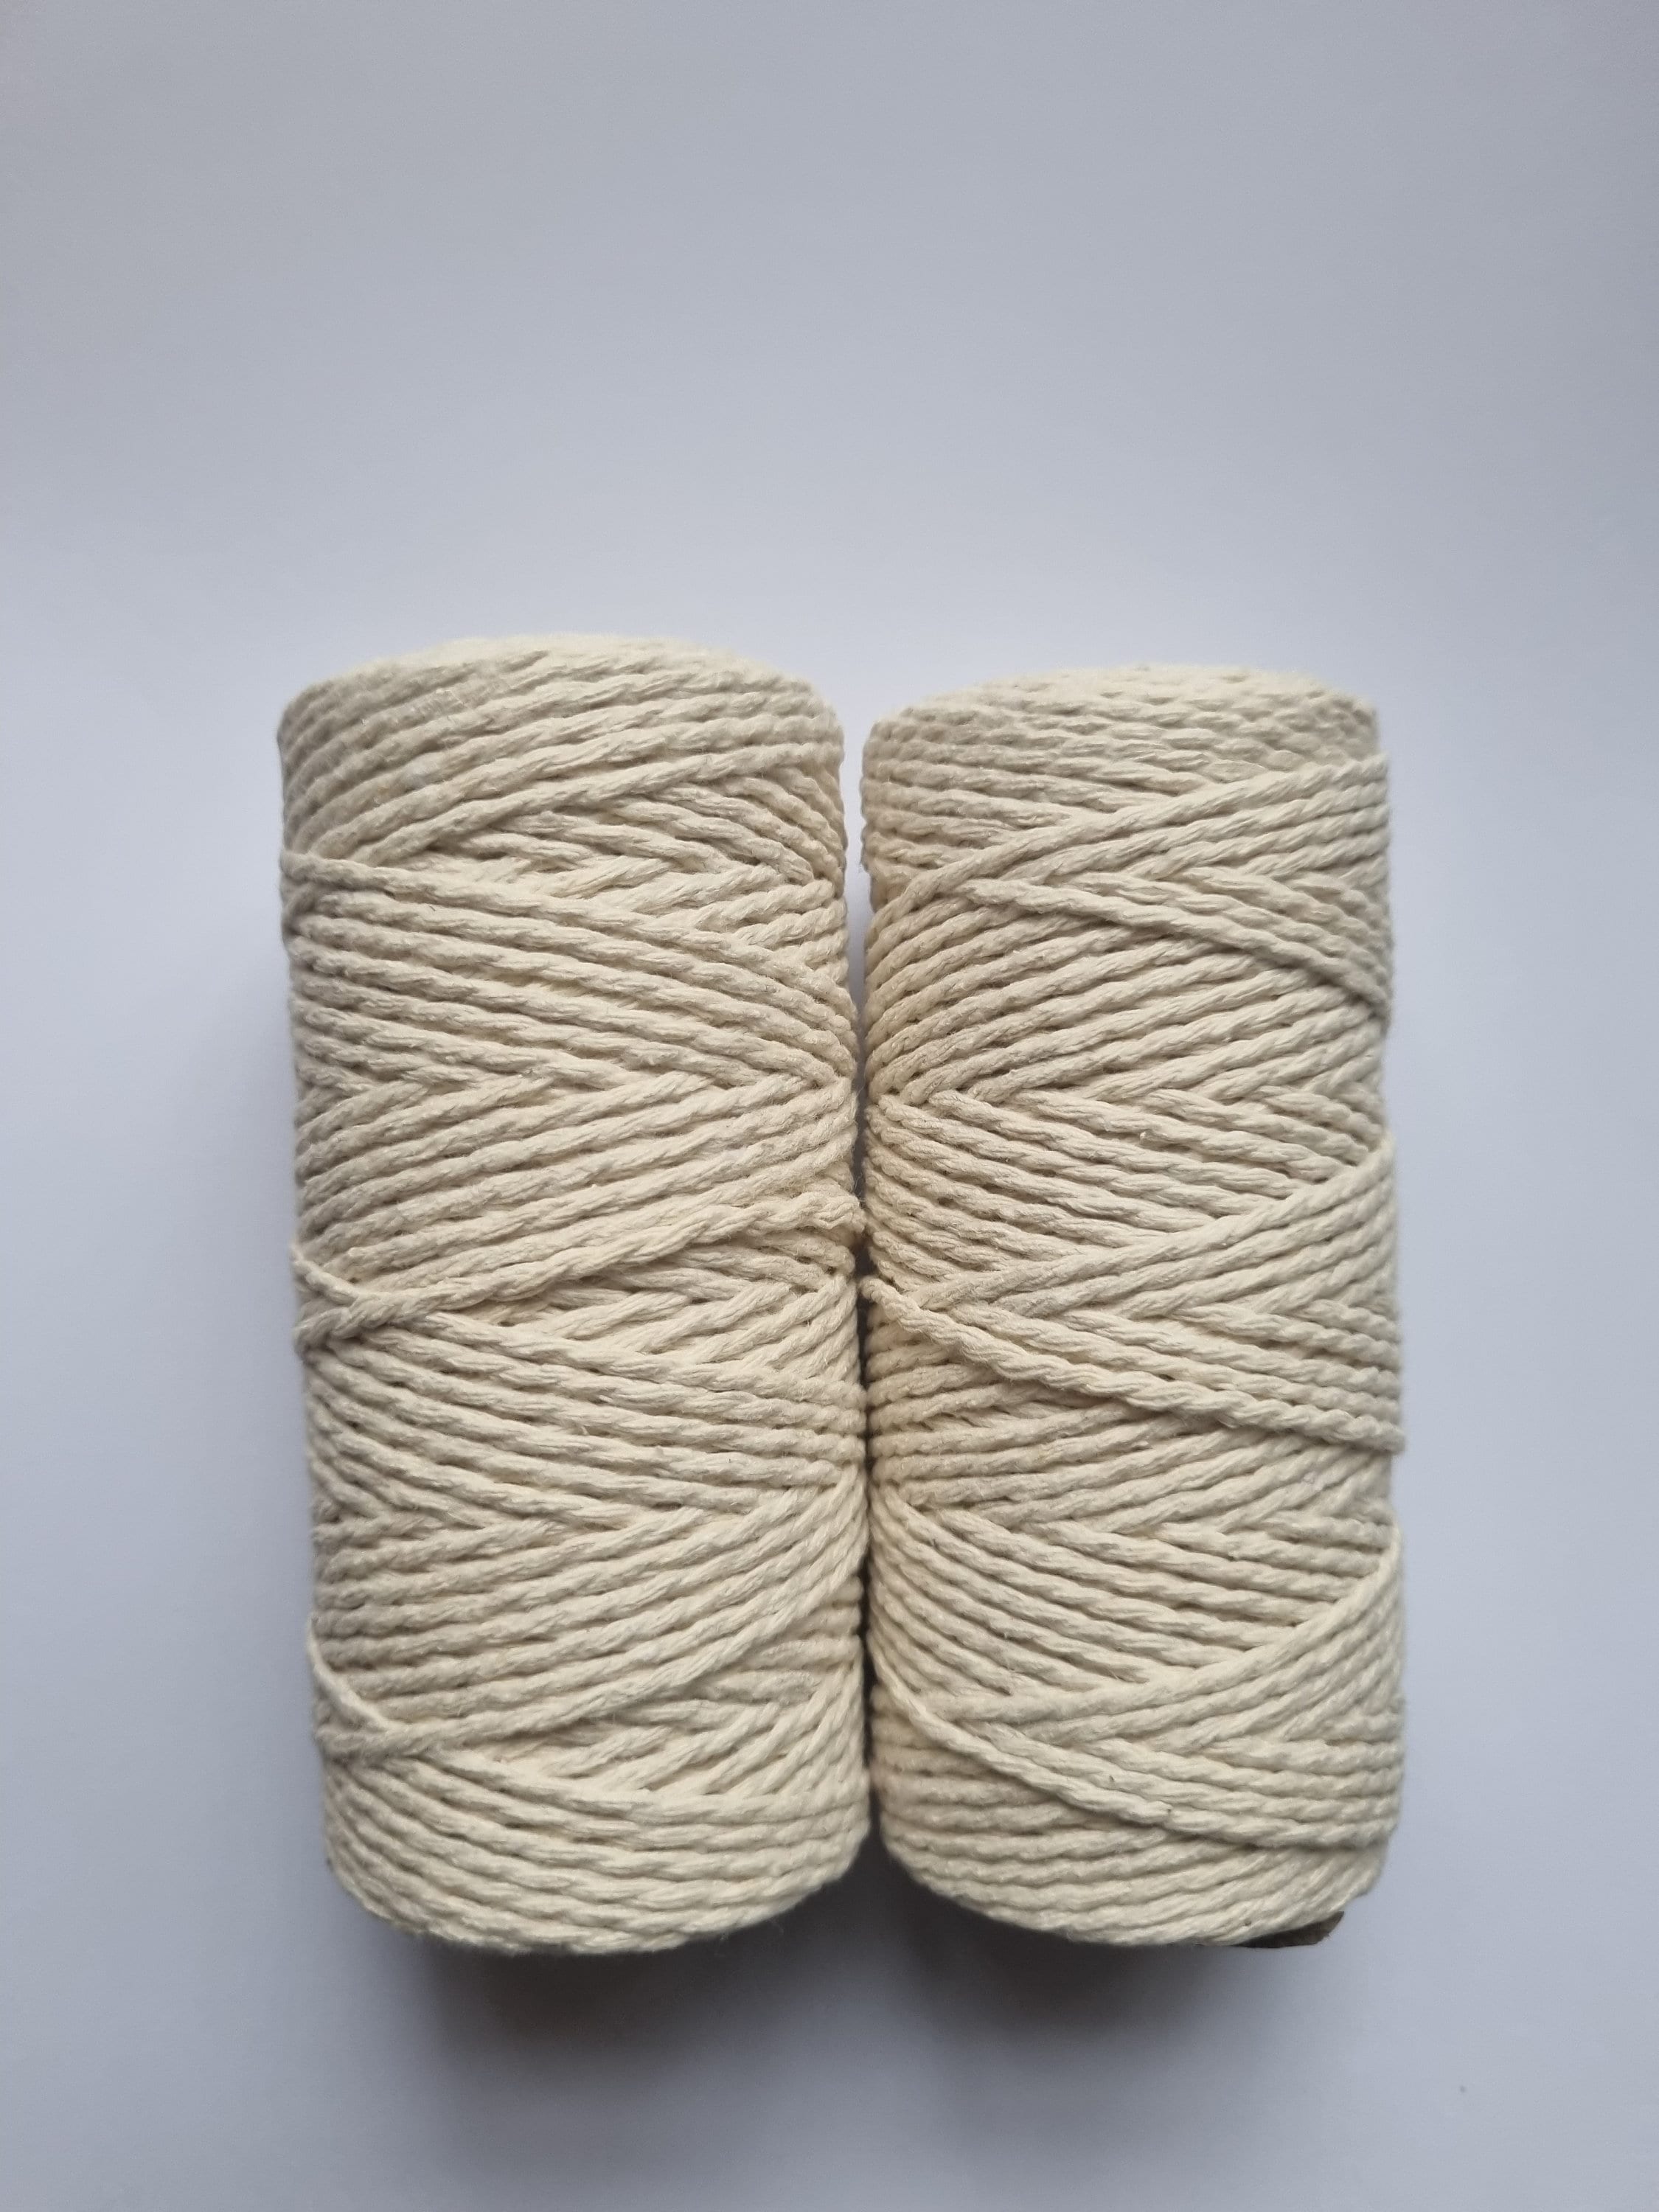 Organic Thin Jute for Craft/ Jute Yarn Nature/ Craft Cord 0.8mm/ Weight  0.22 Lb. Sustainability Yarn/ Eco Twine/ Jute Rope/ Hobby Yarn 